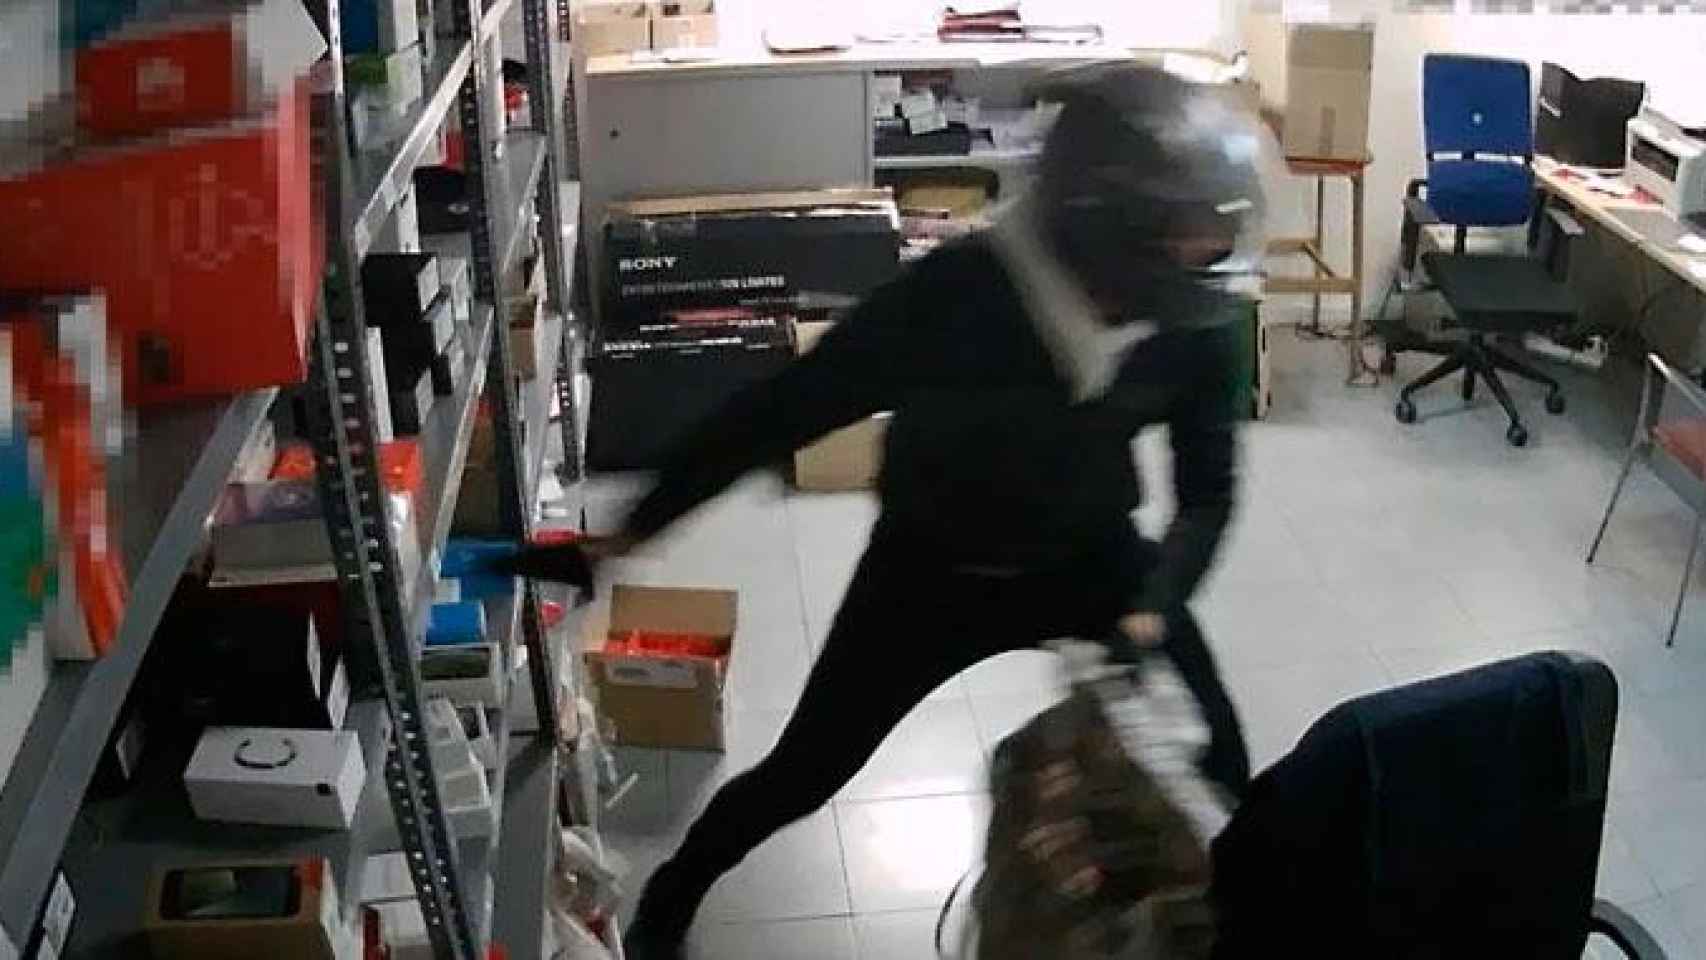 Detienen a dos ladrones que actuaban a punta de pistola en Barcelona / Mossos d'Esquadra